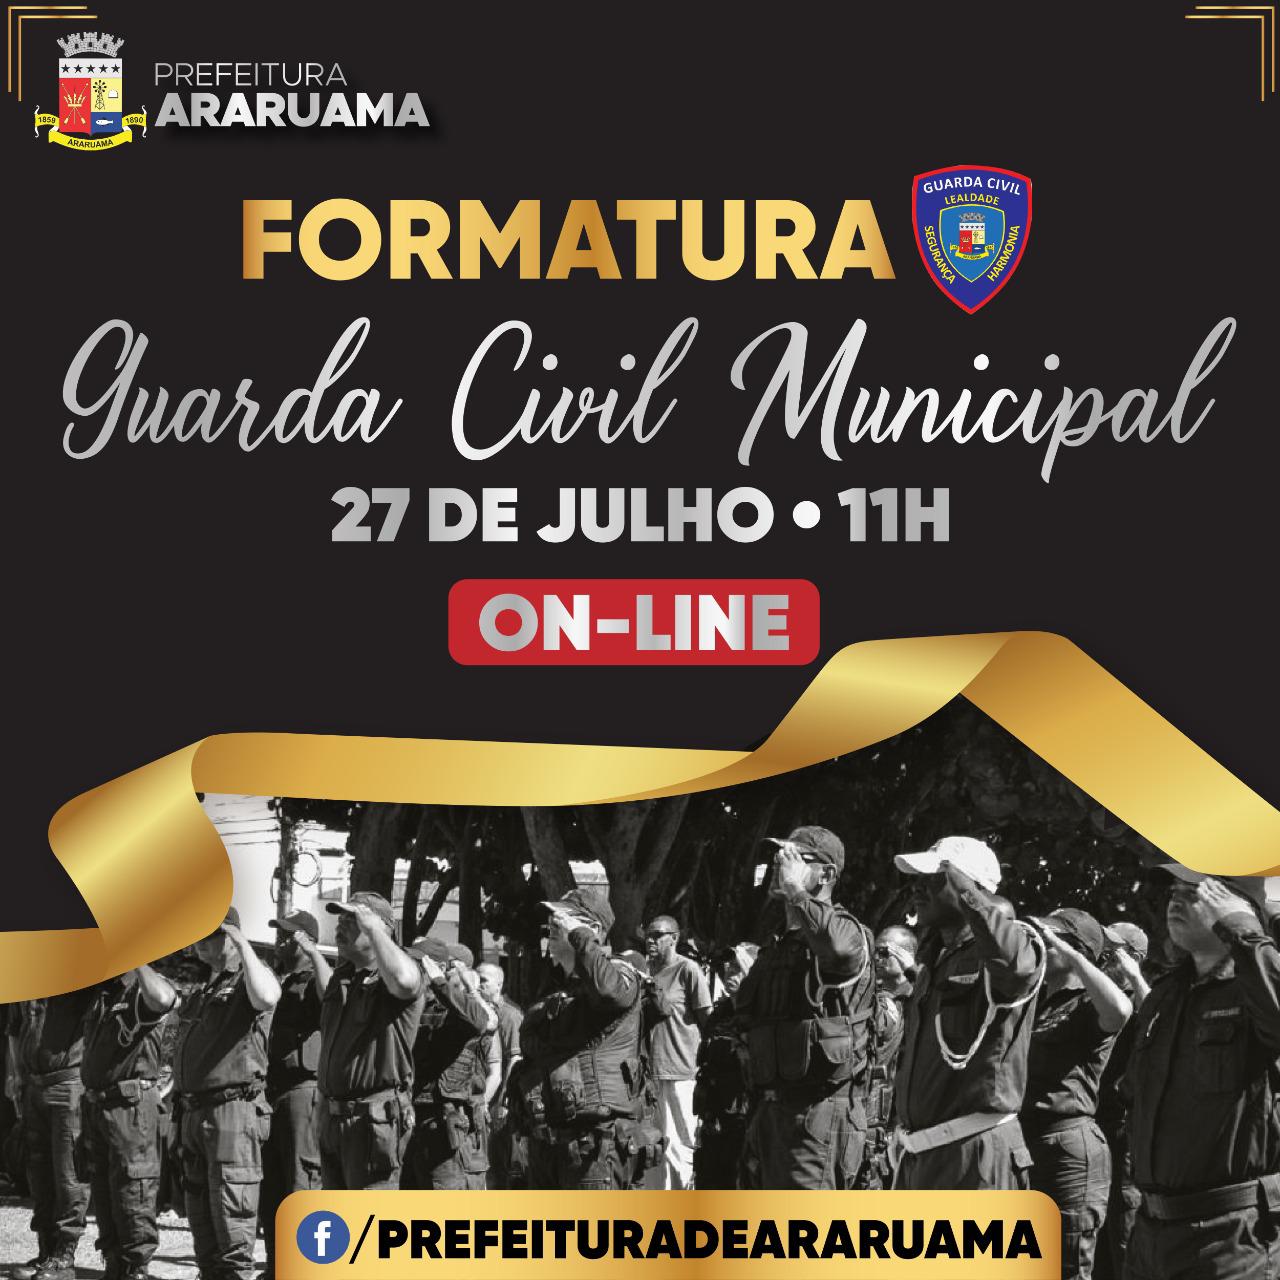 Formatura dos novos agentes da Guarda Civil de Araruama será na próxima semana com transmissão on-line